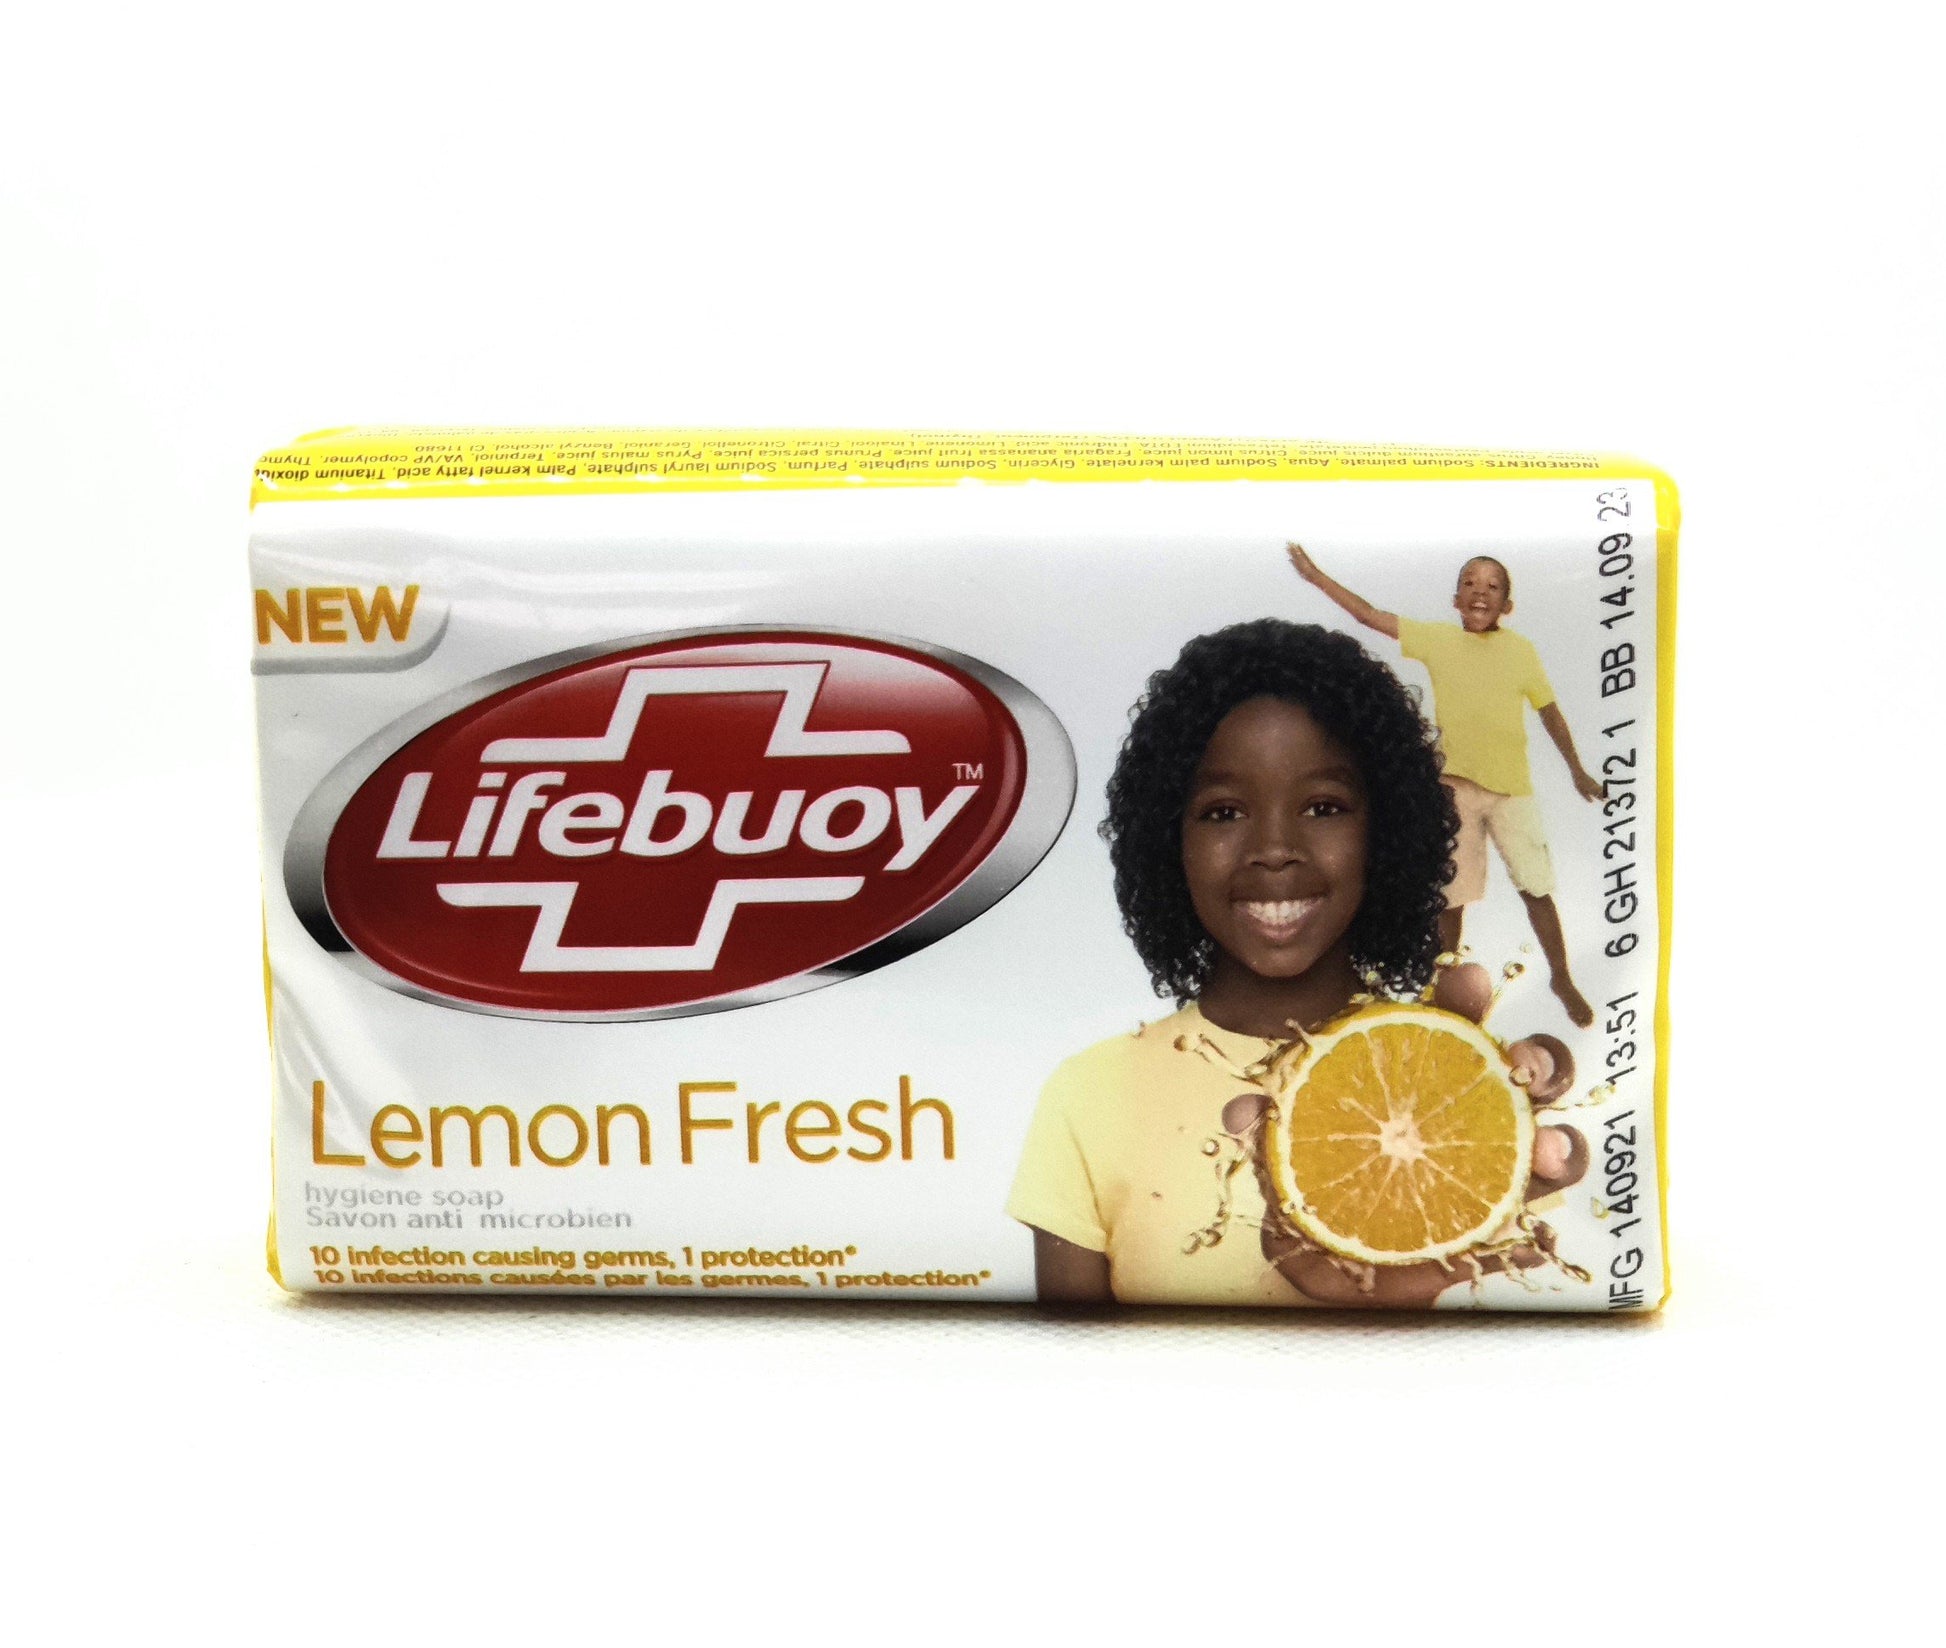 175 gram bar of lifebuoy lemon fresh soap